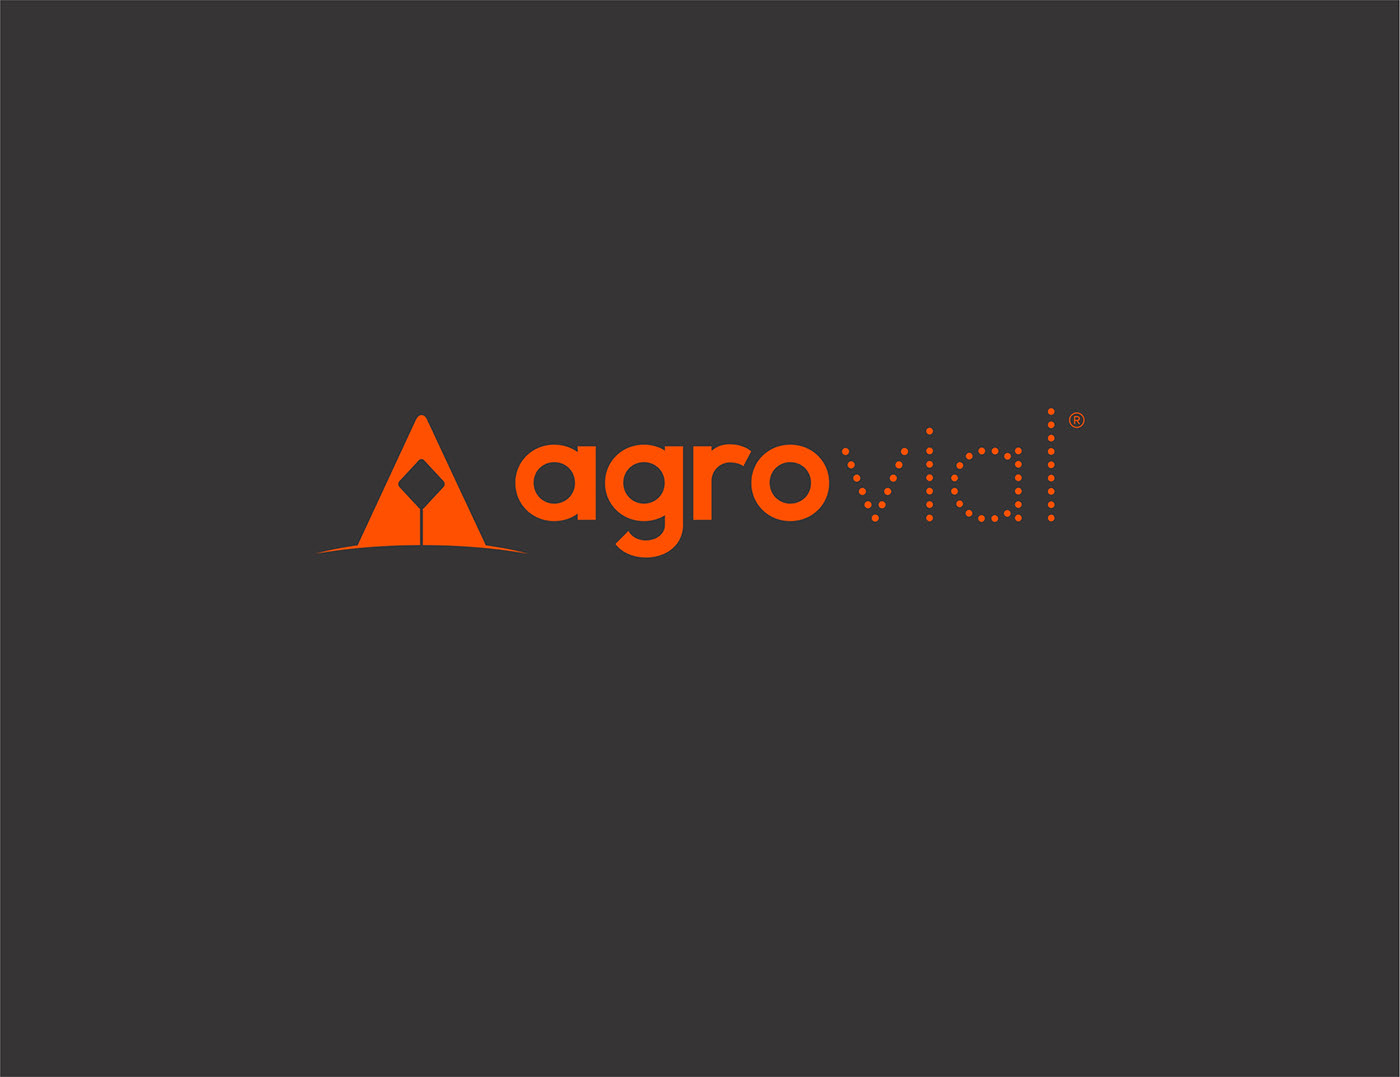 rebranding branding  logo logotipos  medellin colombia agrovial tascon publicidad new NUEVO LOGO